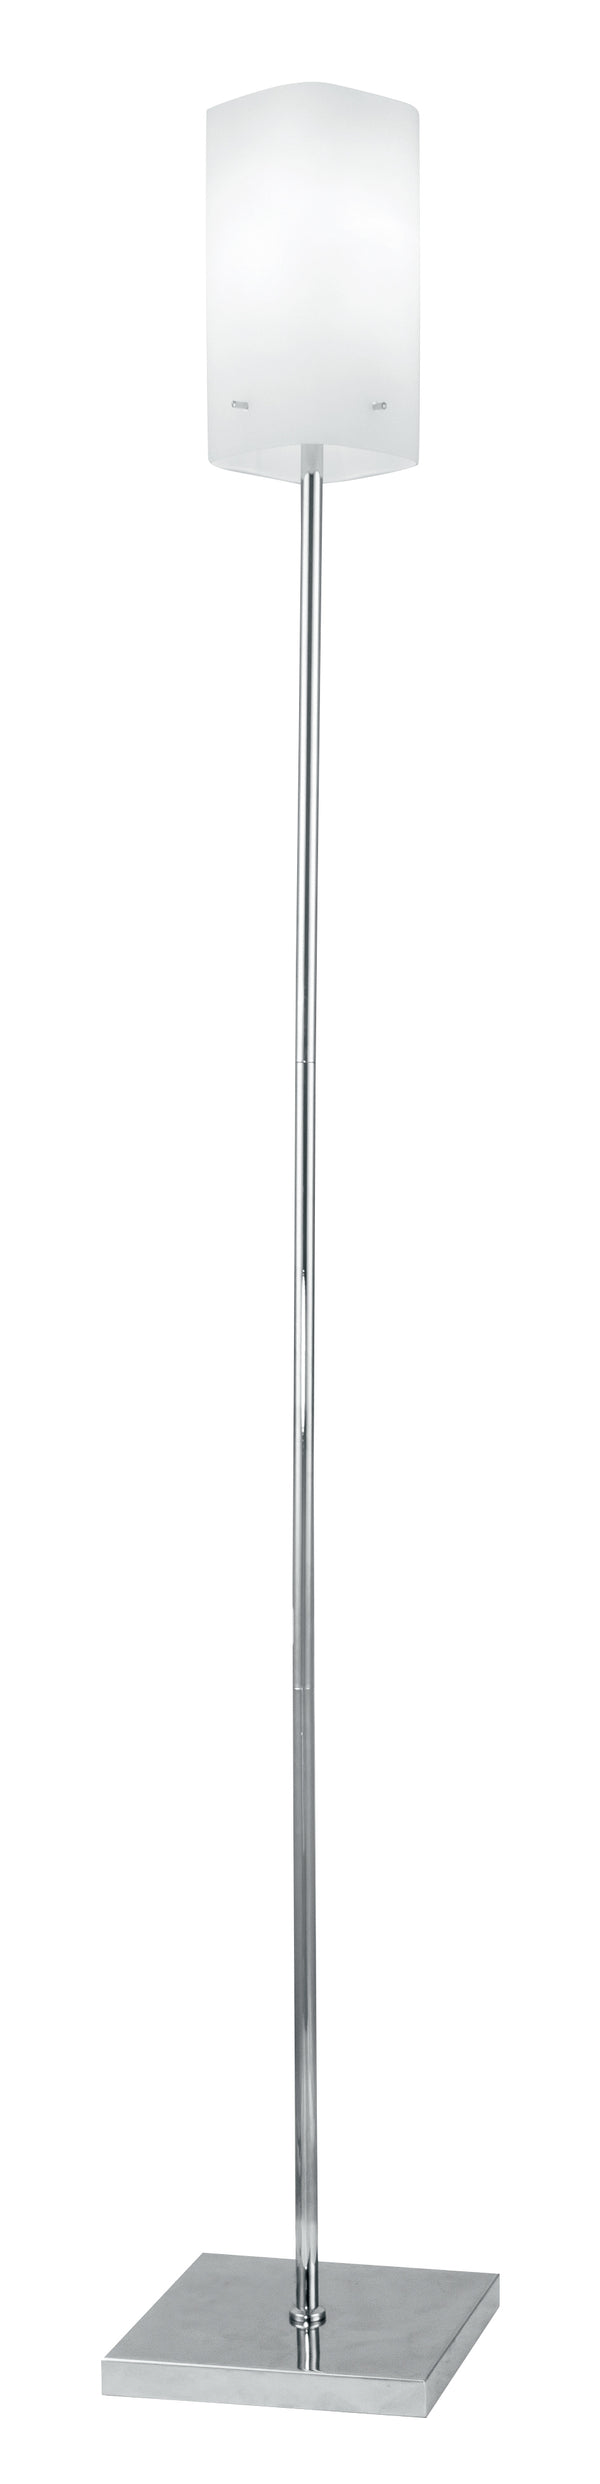 Lampadaire en métal, abat-jour en verre blanc, lampadaire moderne E27 online